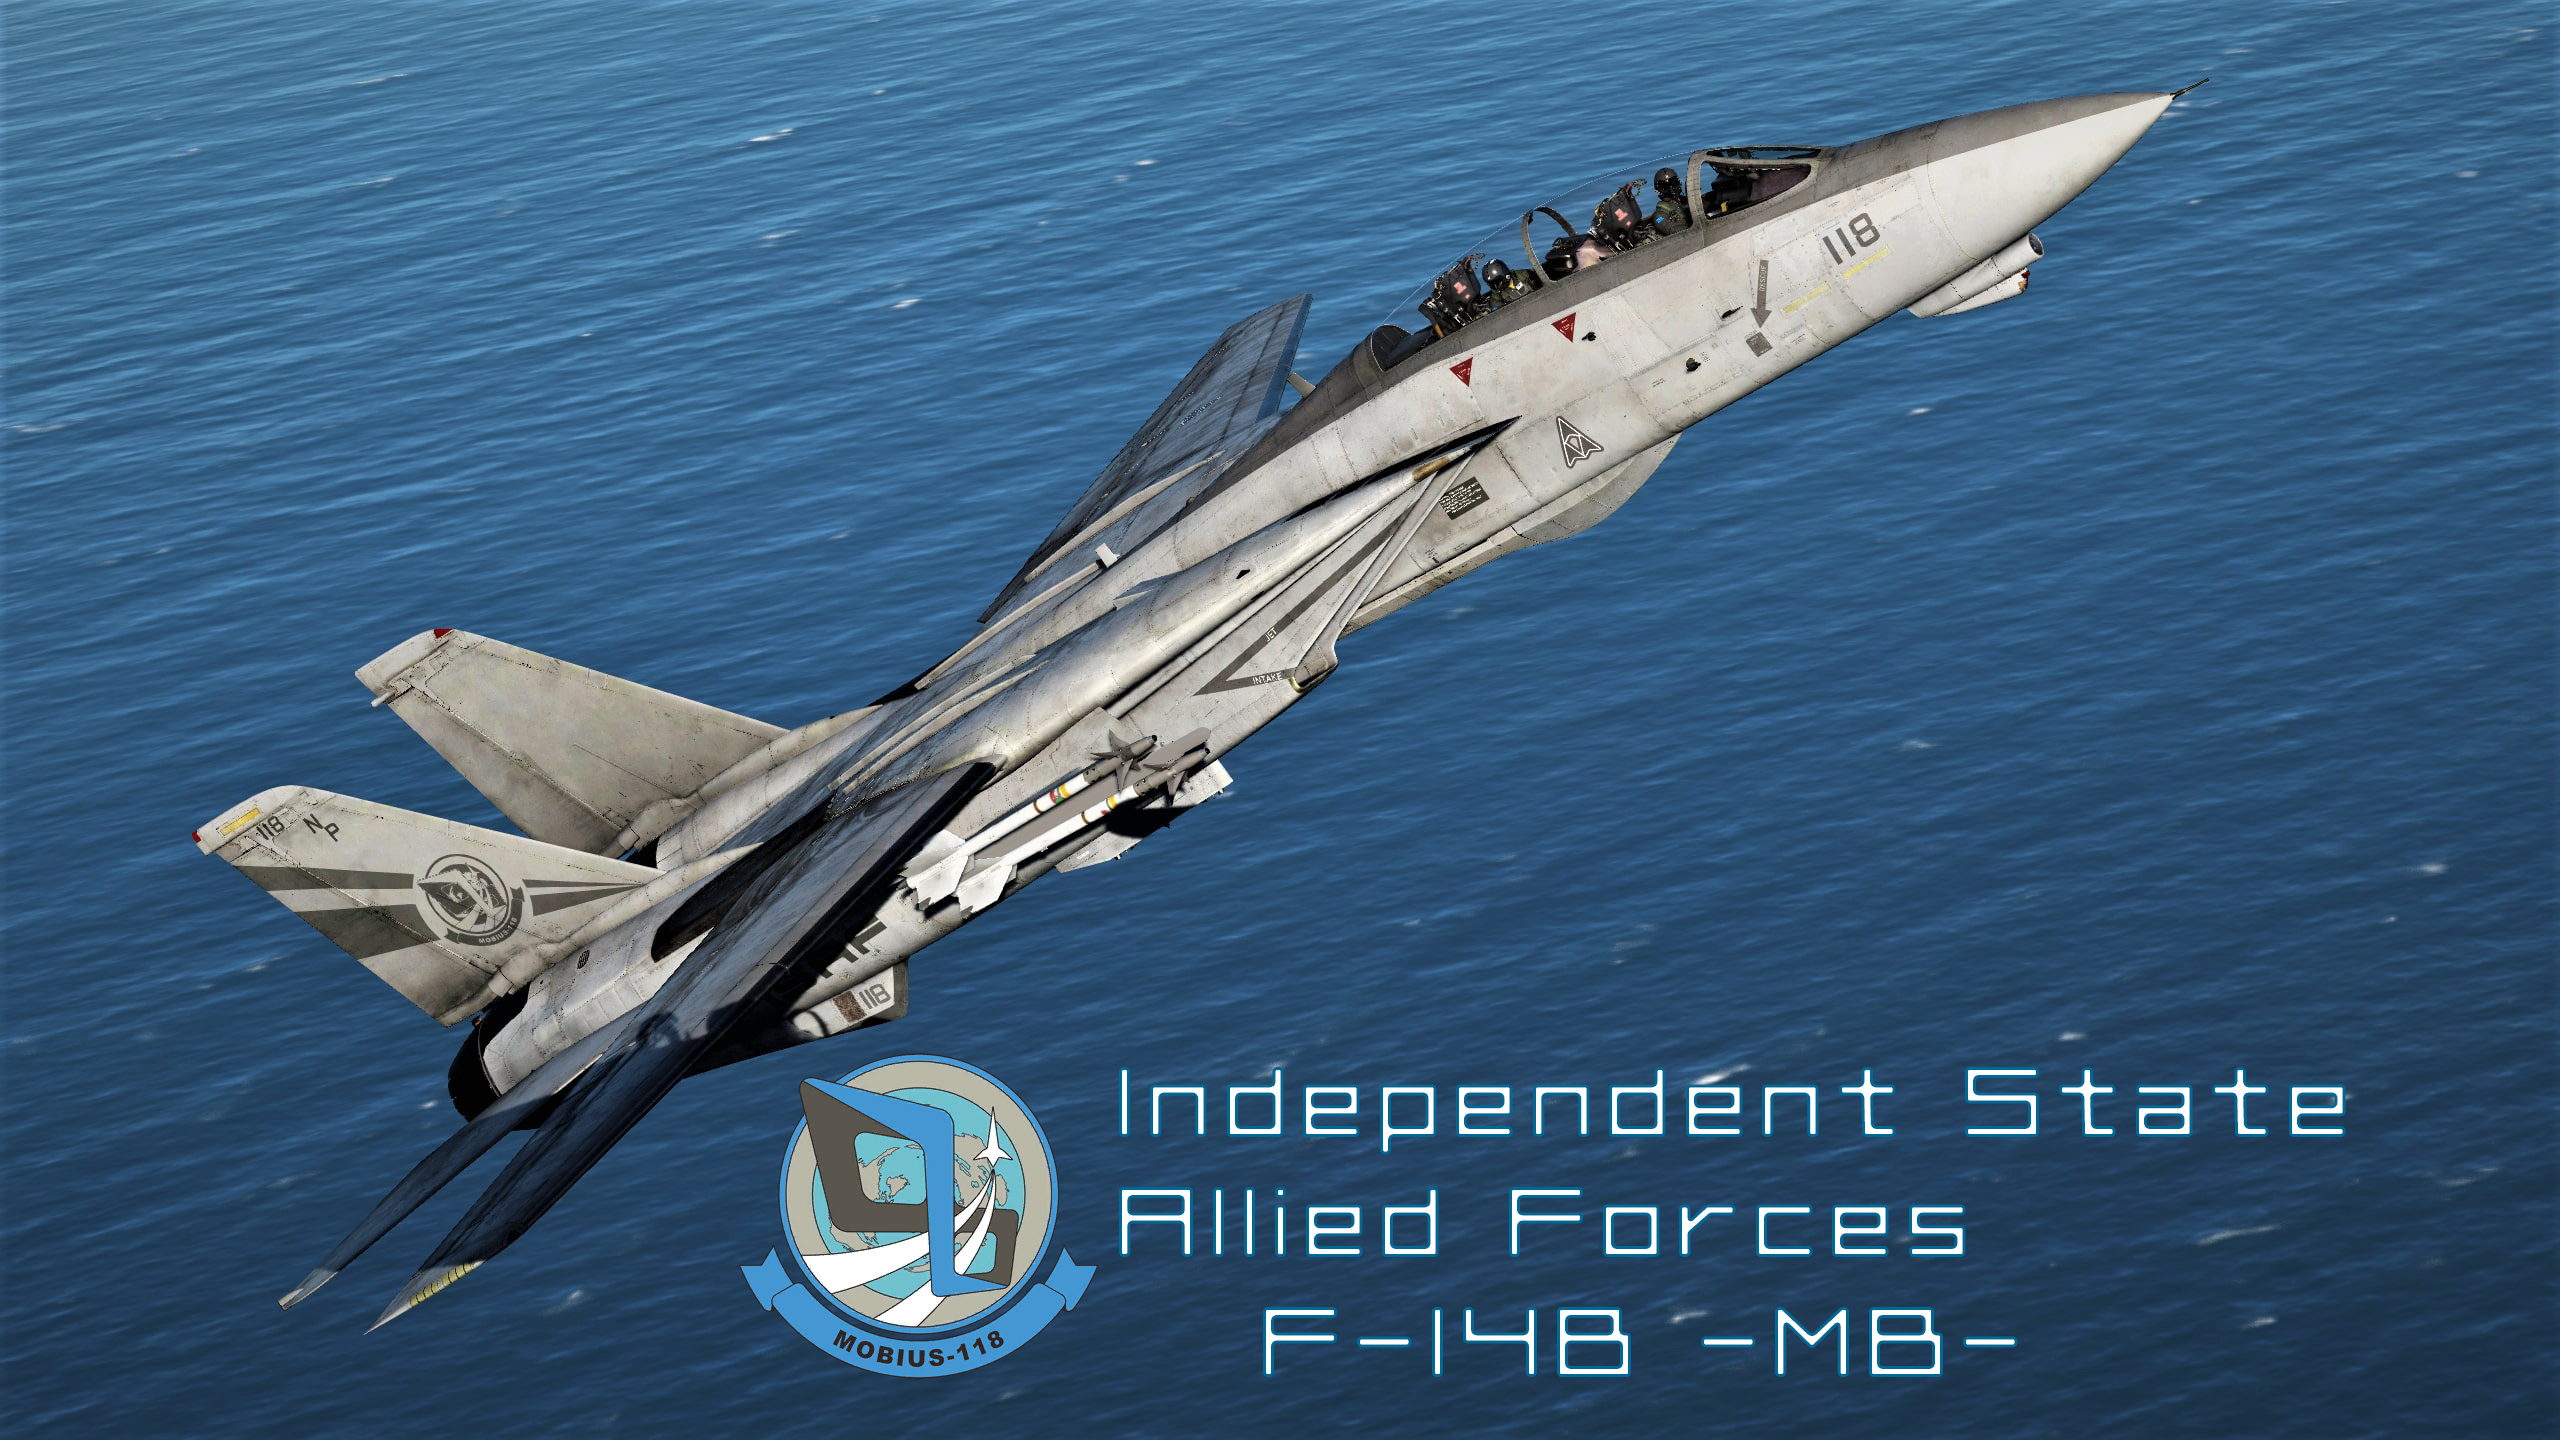 F-14B - Ace Combat 4: Mobius 1